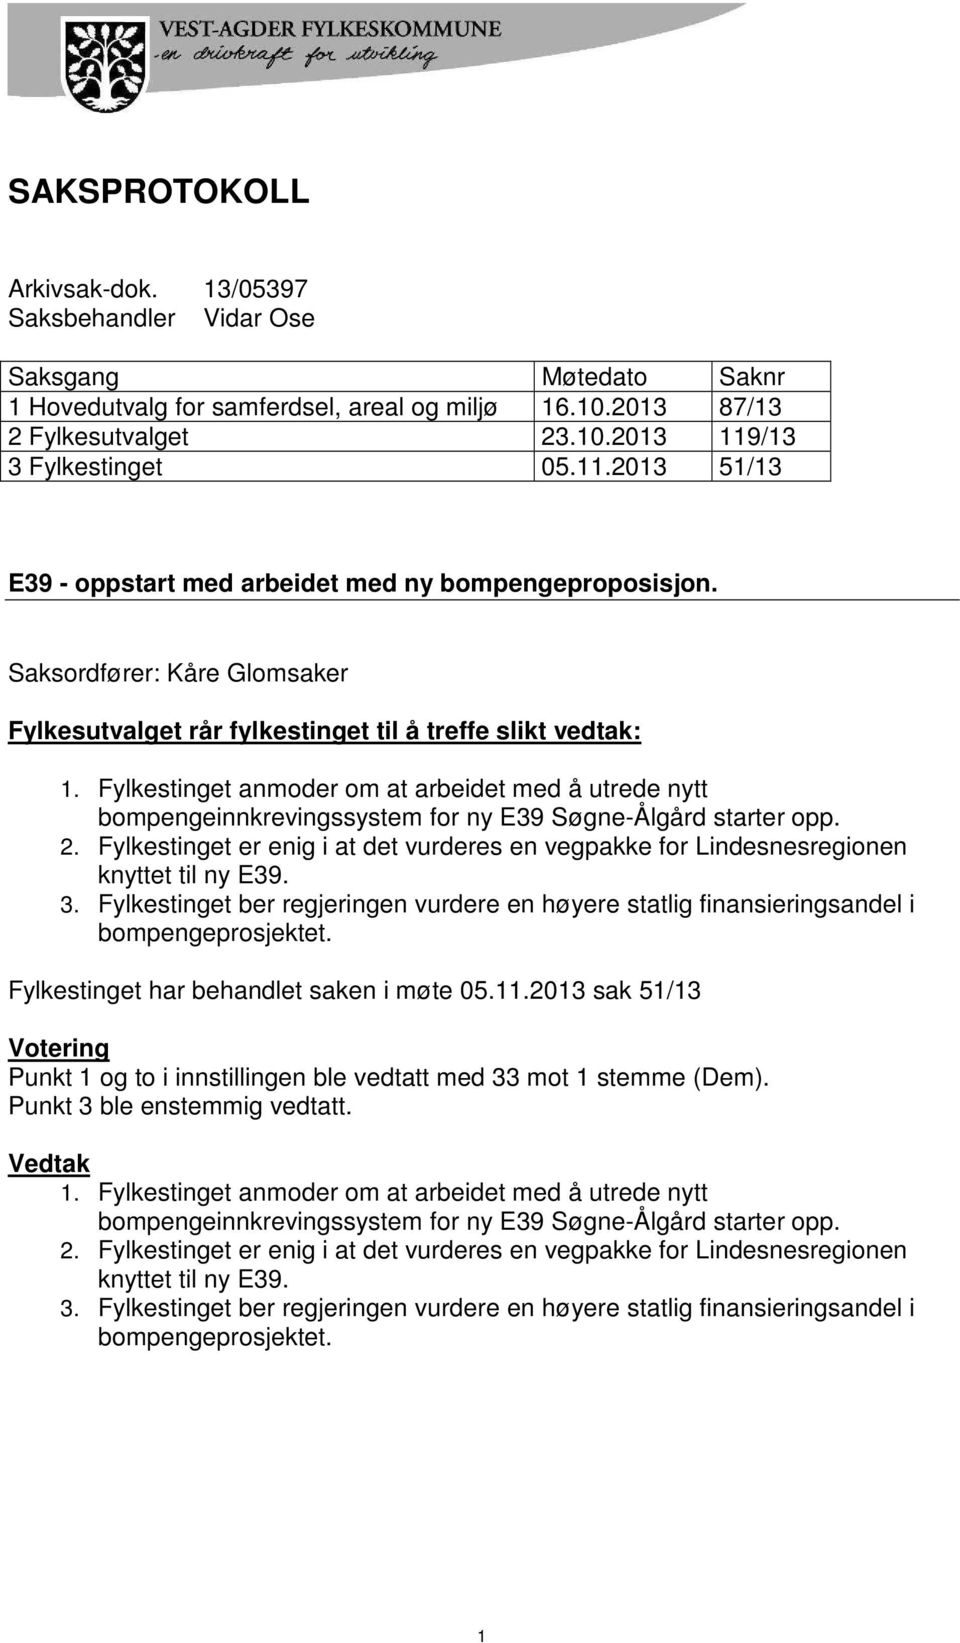 Fylkestinget anmoder om at arbeidet med å utrede nytt bompengeinnkrevingssystem for ny E39 Søgne-Ålgård starter opp. 2.